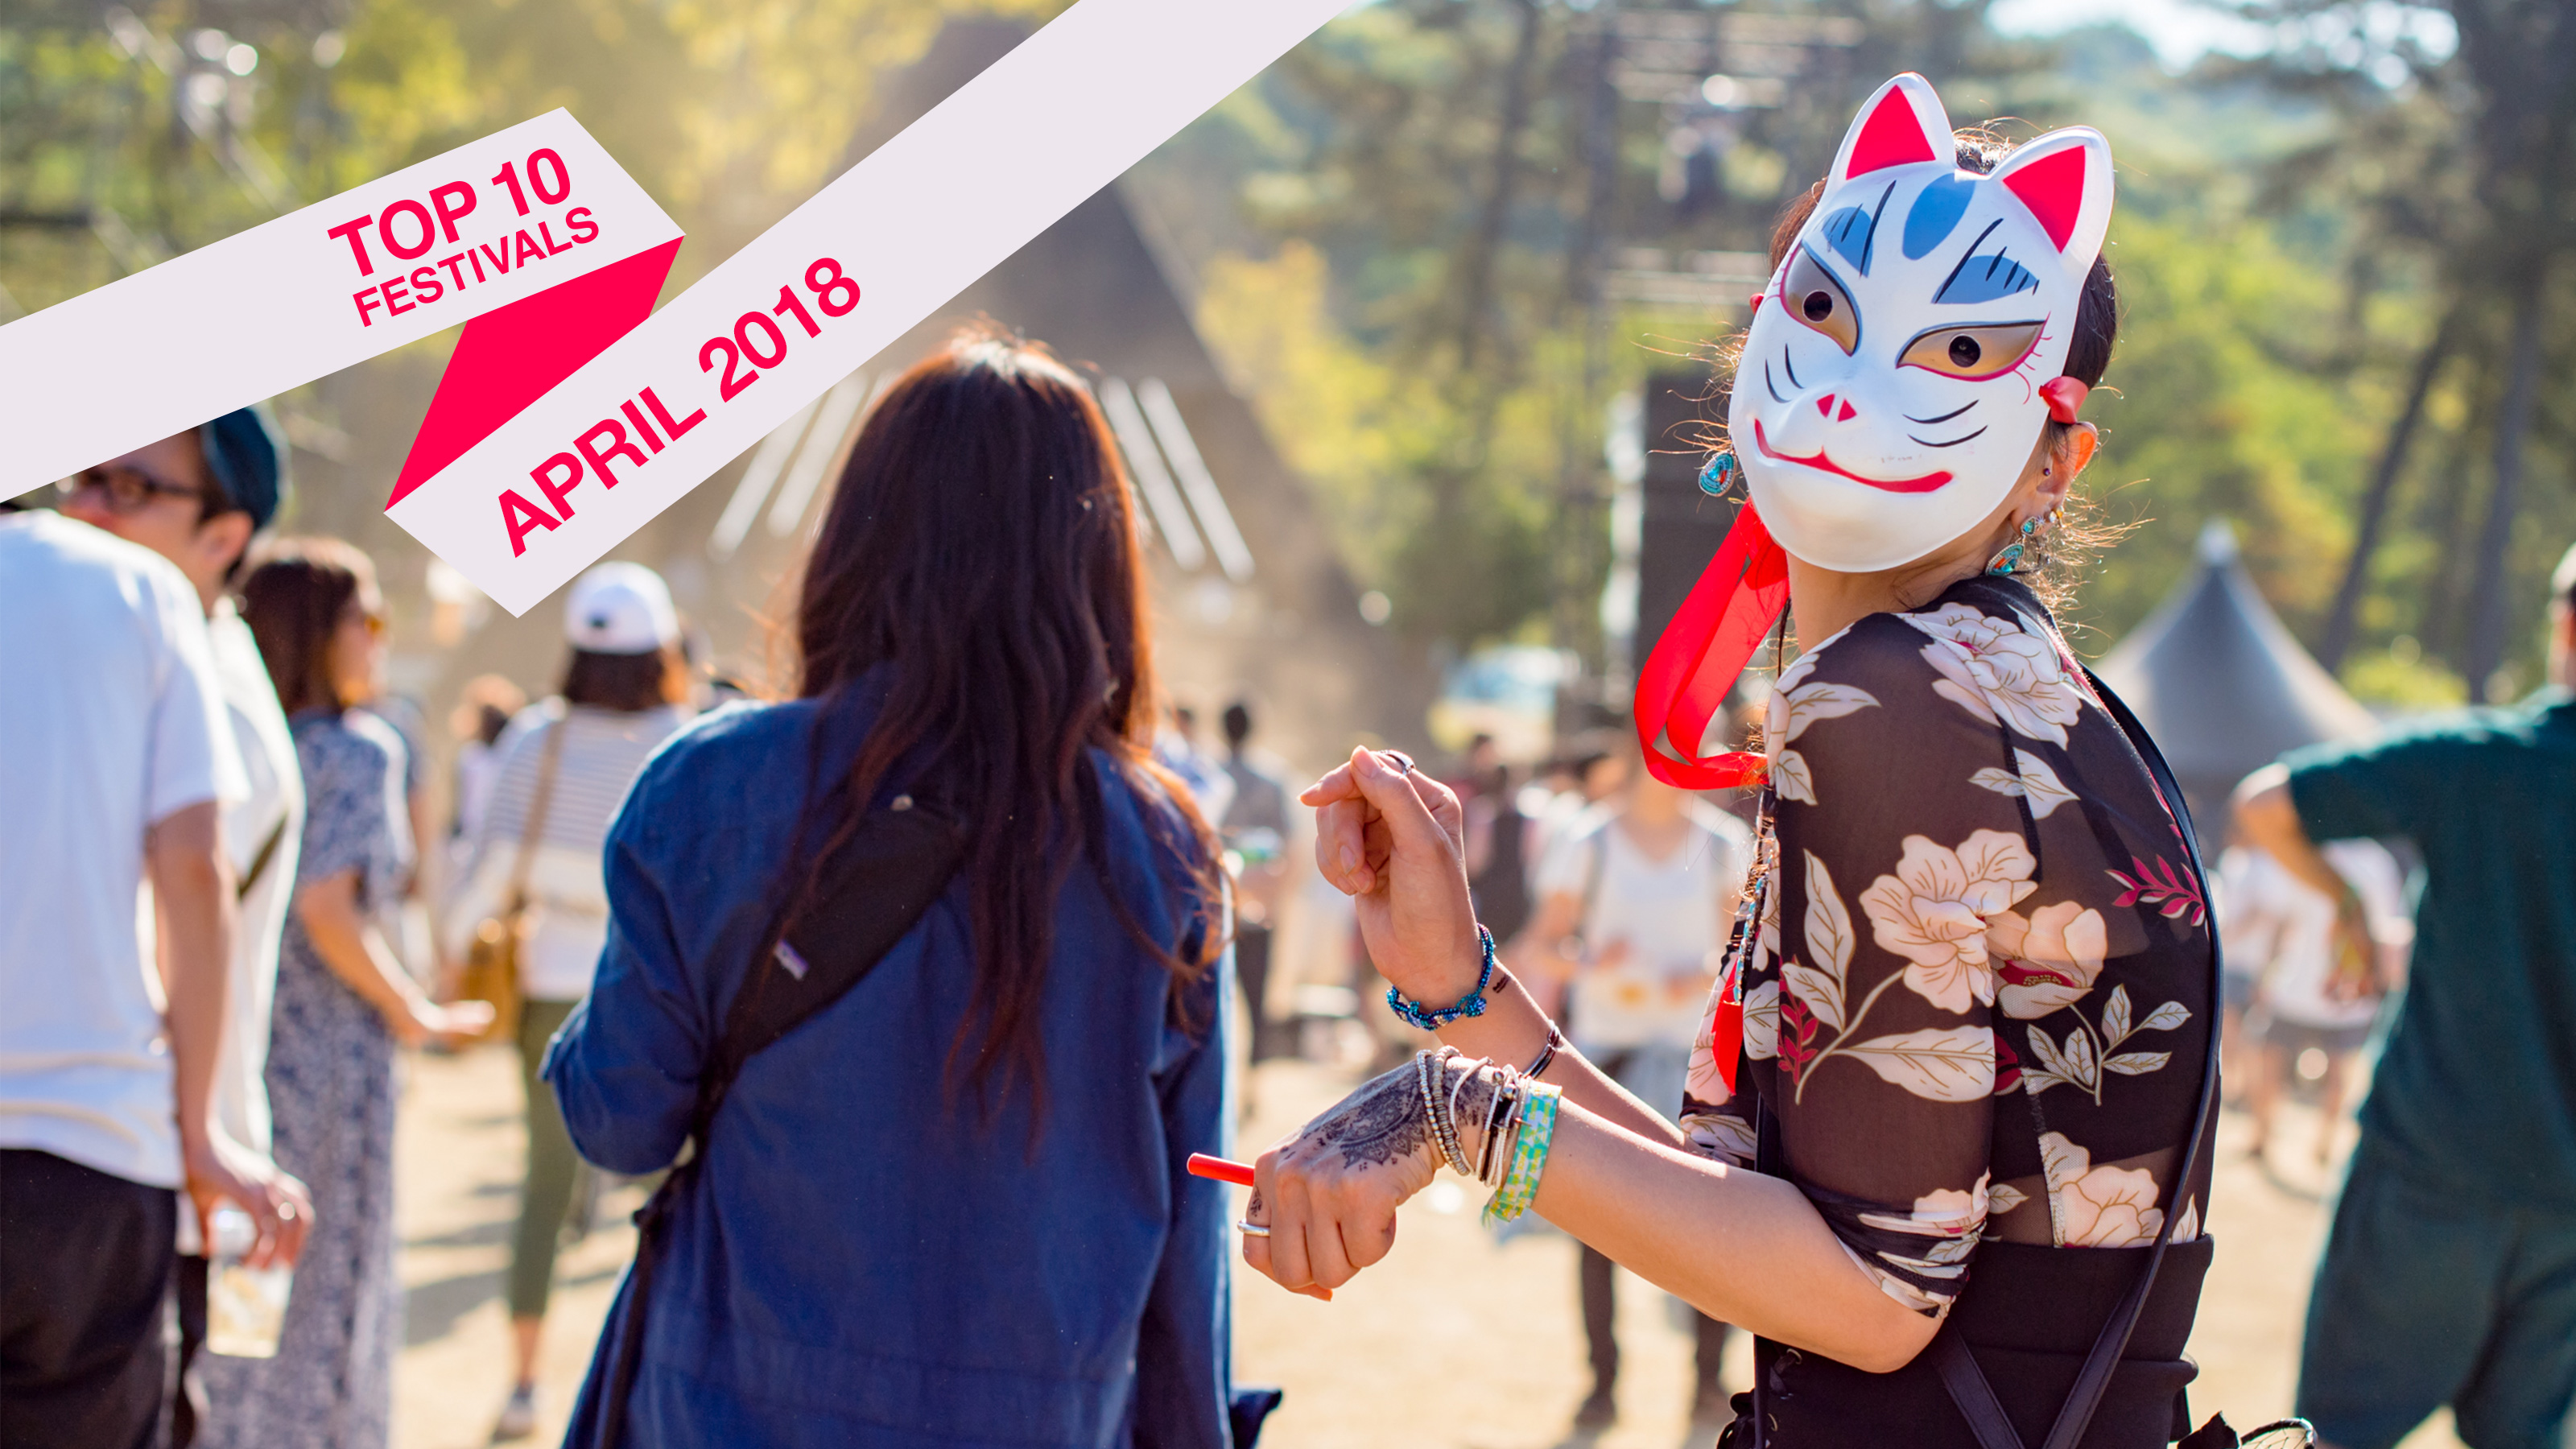 Top 10 April 2018 Festivals